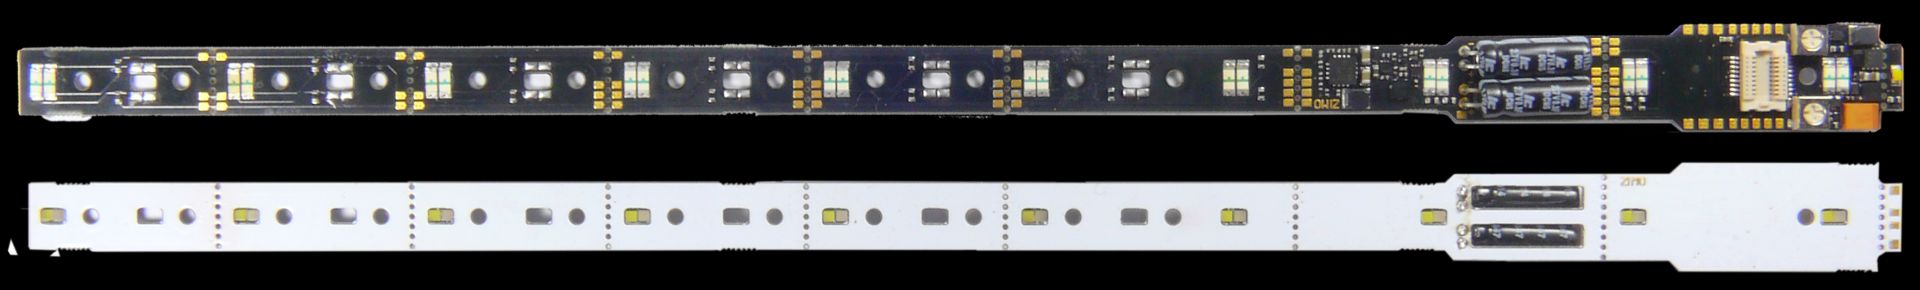 Zimo LIPL1N18 - Lichtplatine mit Next18-Schnittstelle, Anschl. Lötpads - 208 x 12 x 4,5 mm